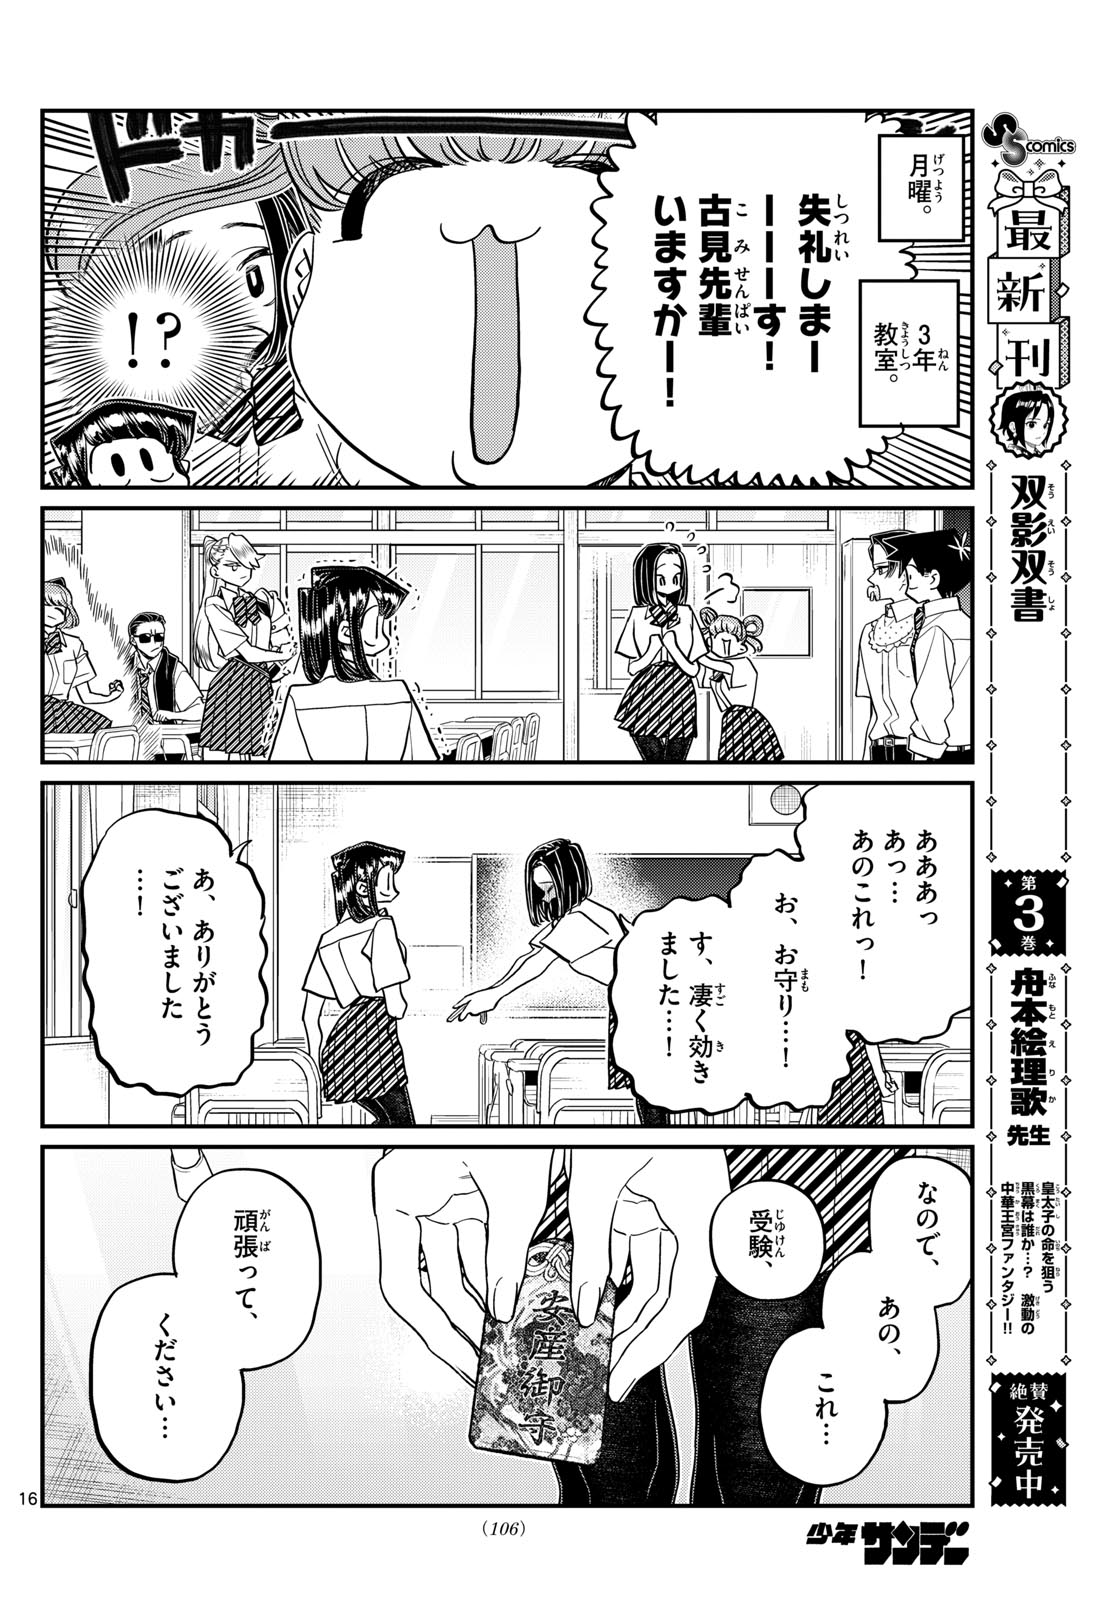 Komi-san wa Komyushou Desu - Chapter 435 - Page 16